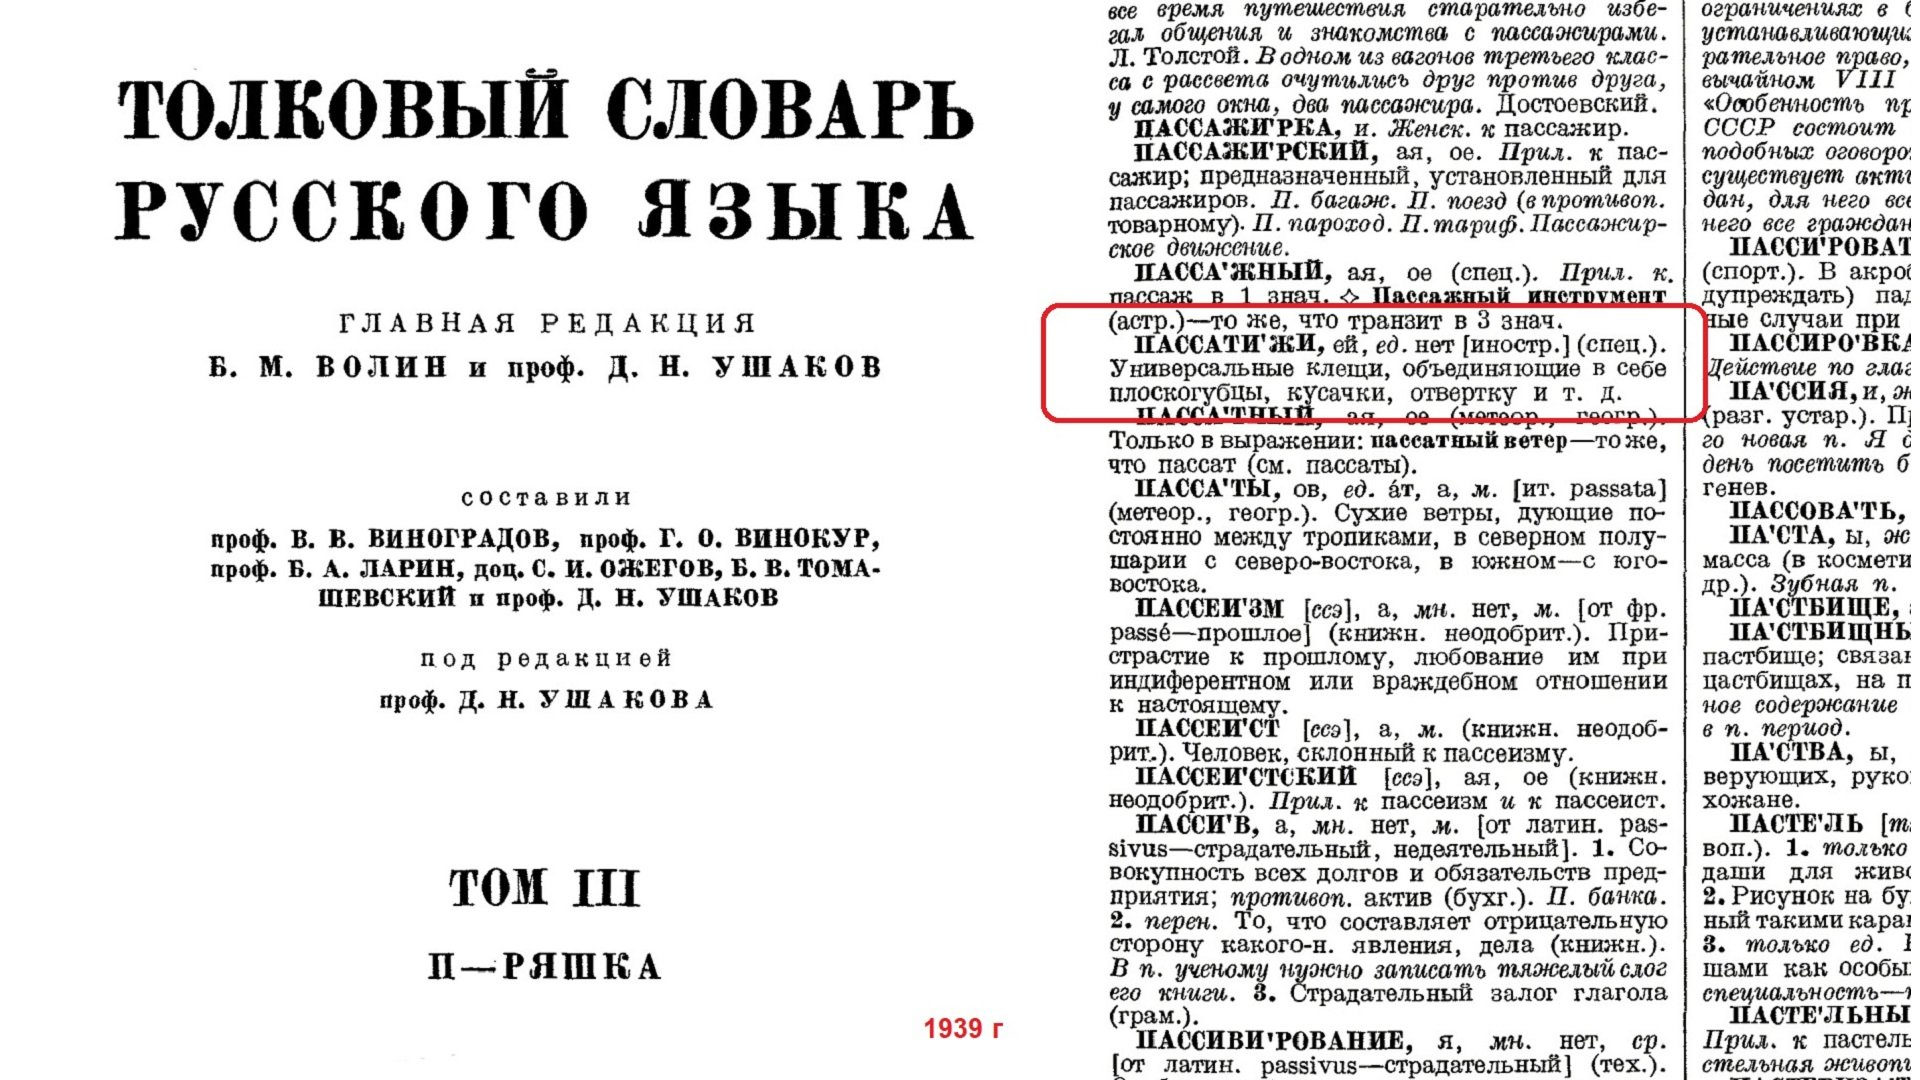 26 Ушаков Словарь 1939 г.jpg